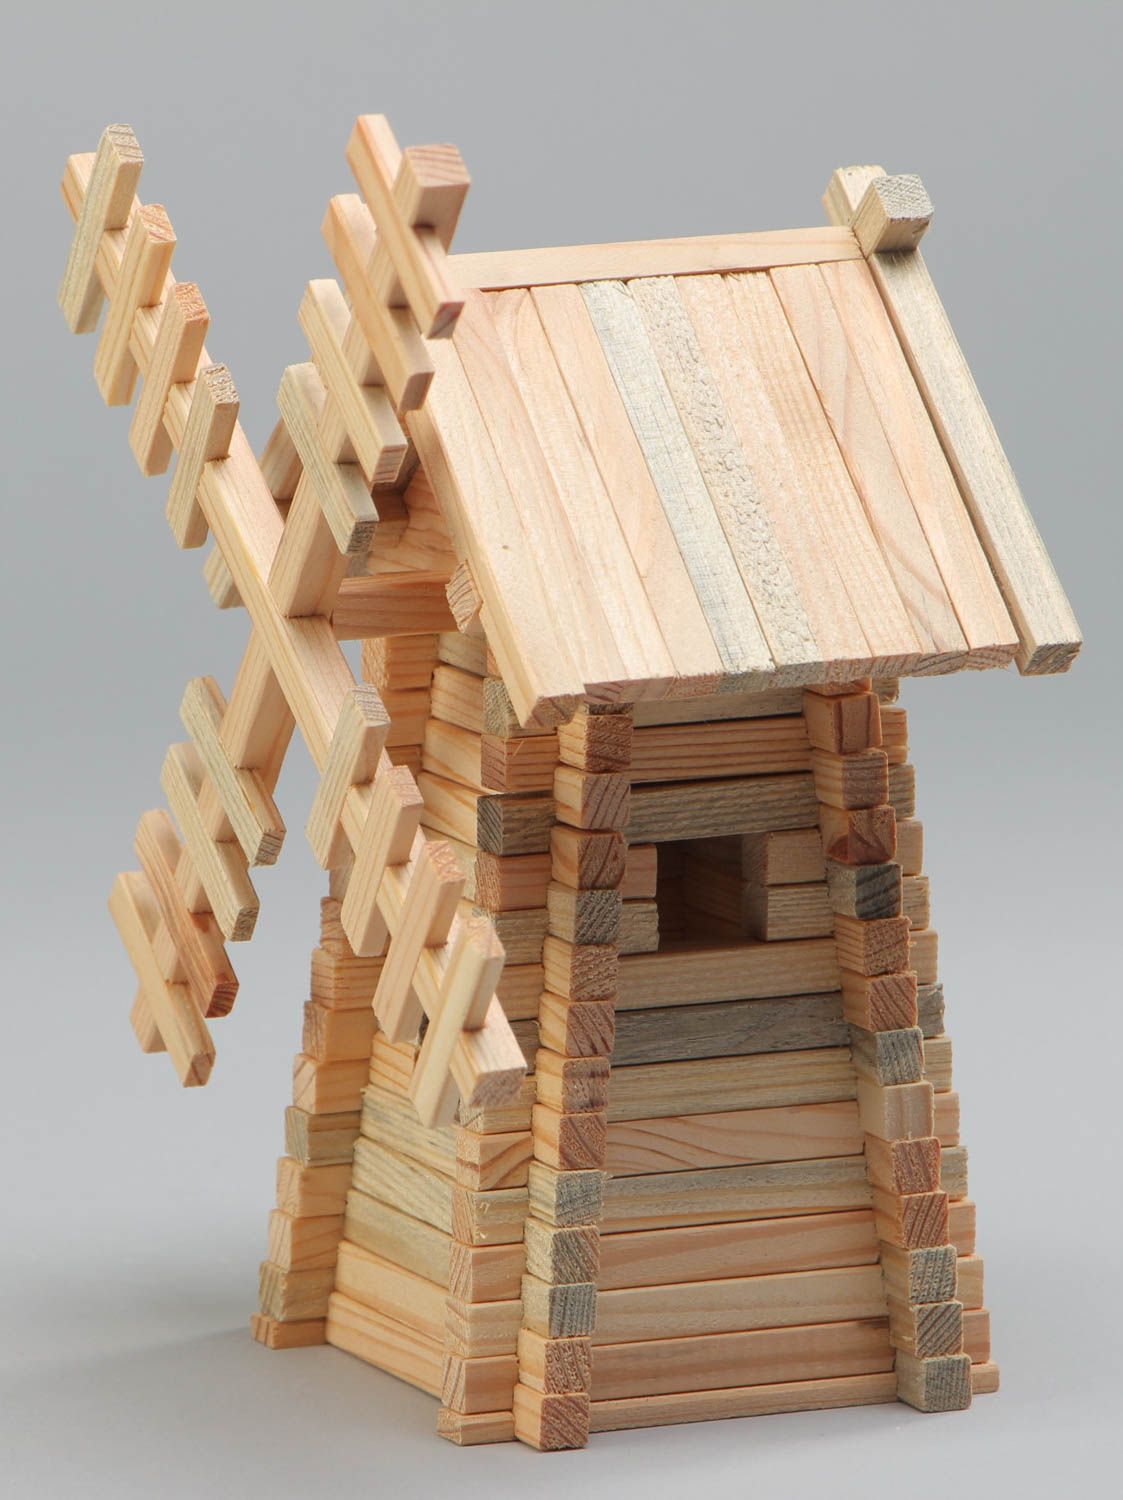 Jeu de construction en bois fait main pratique 120 pièces original pour enfant photo 2